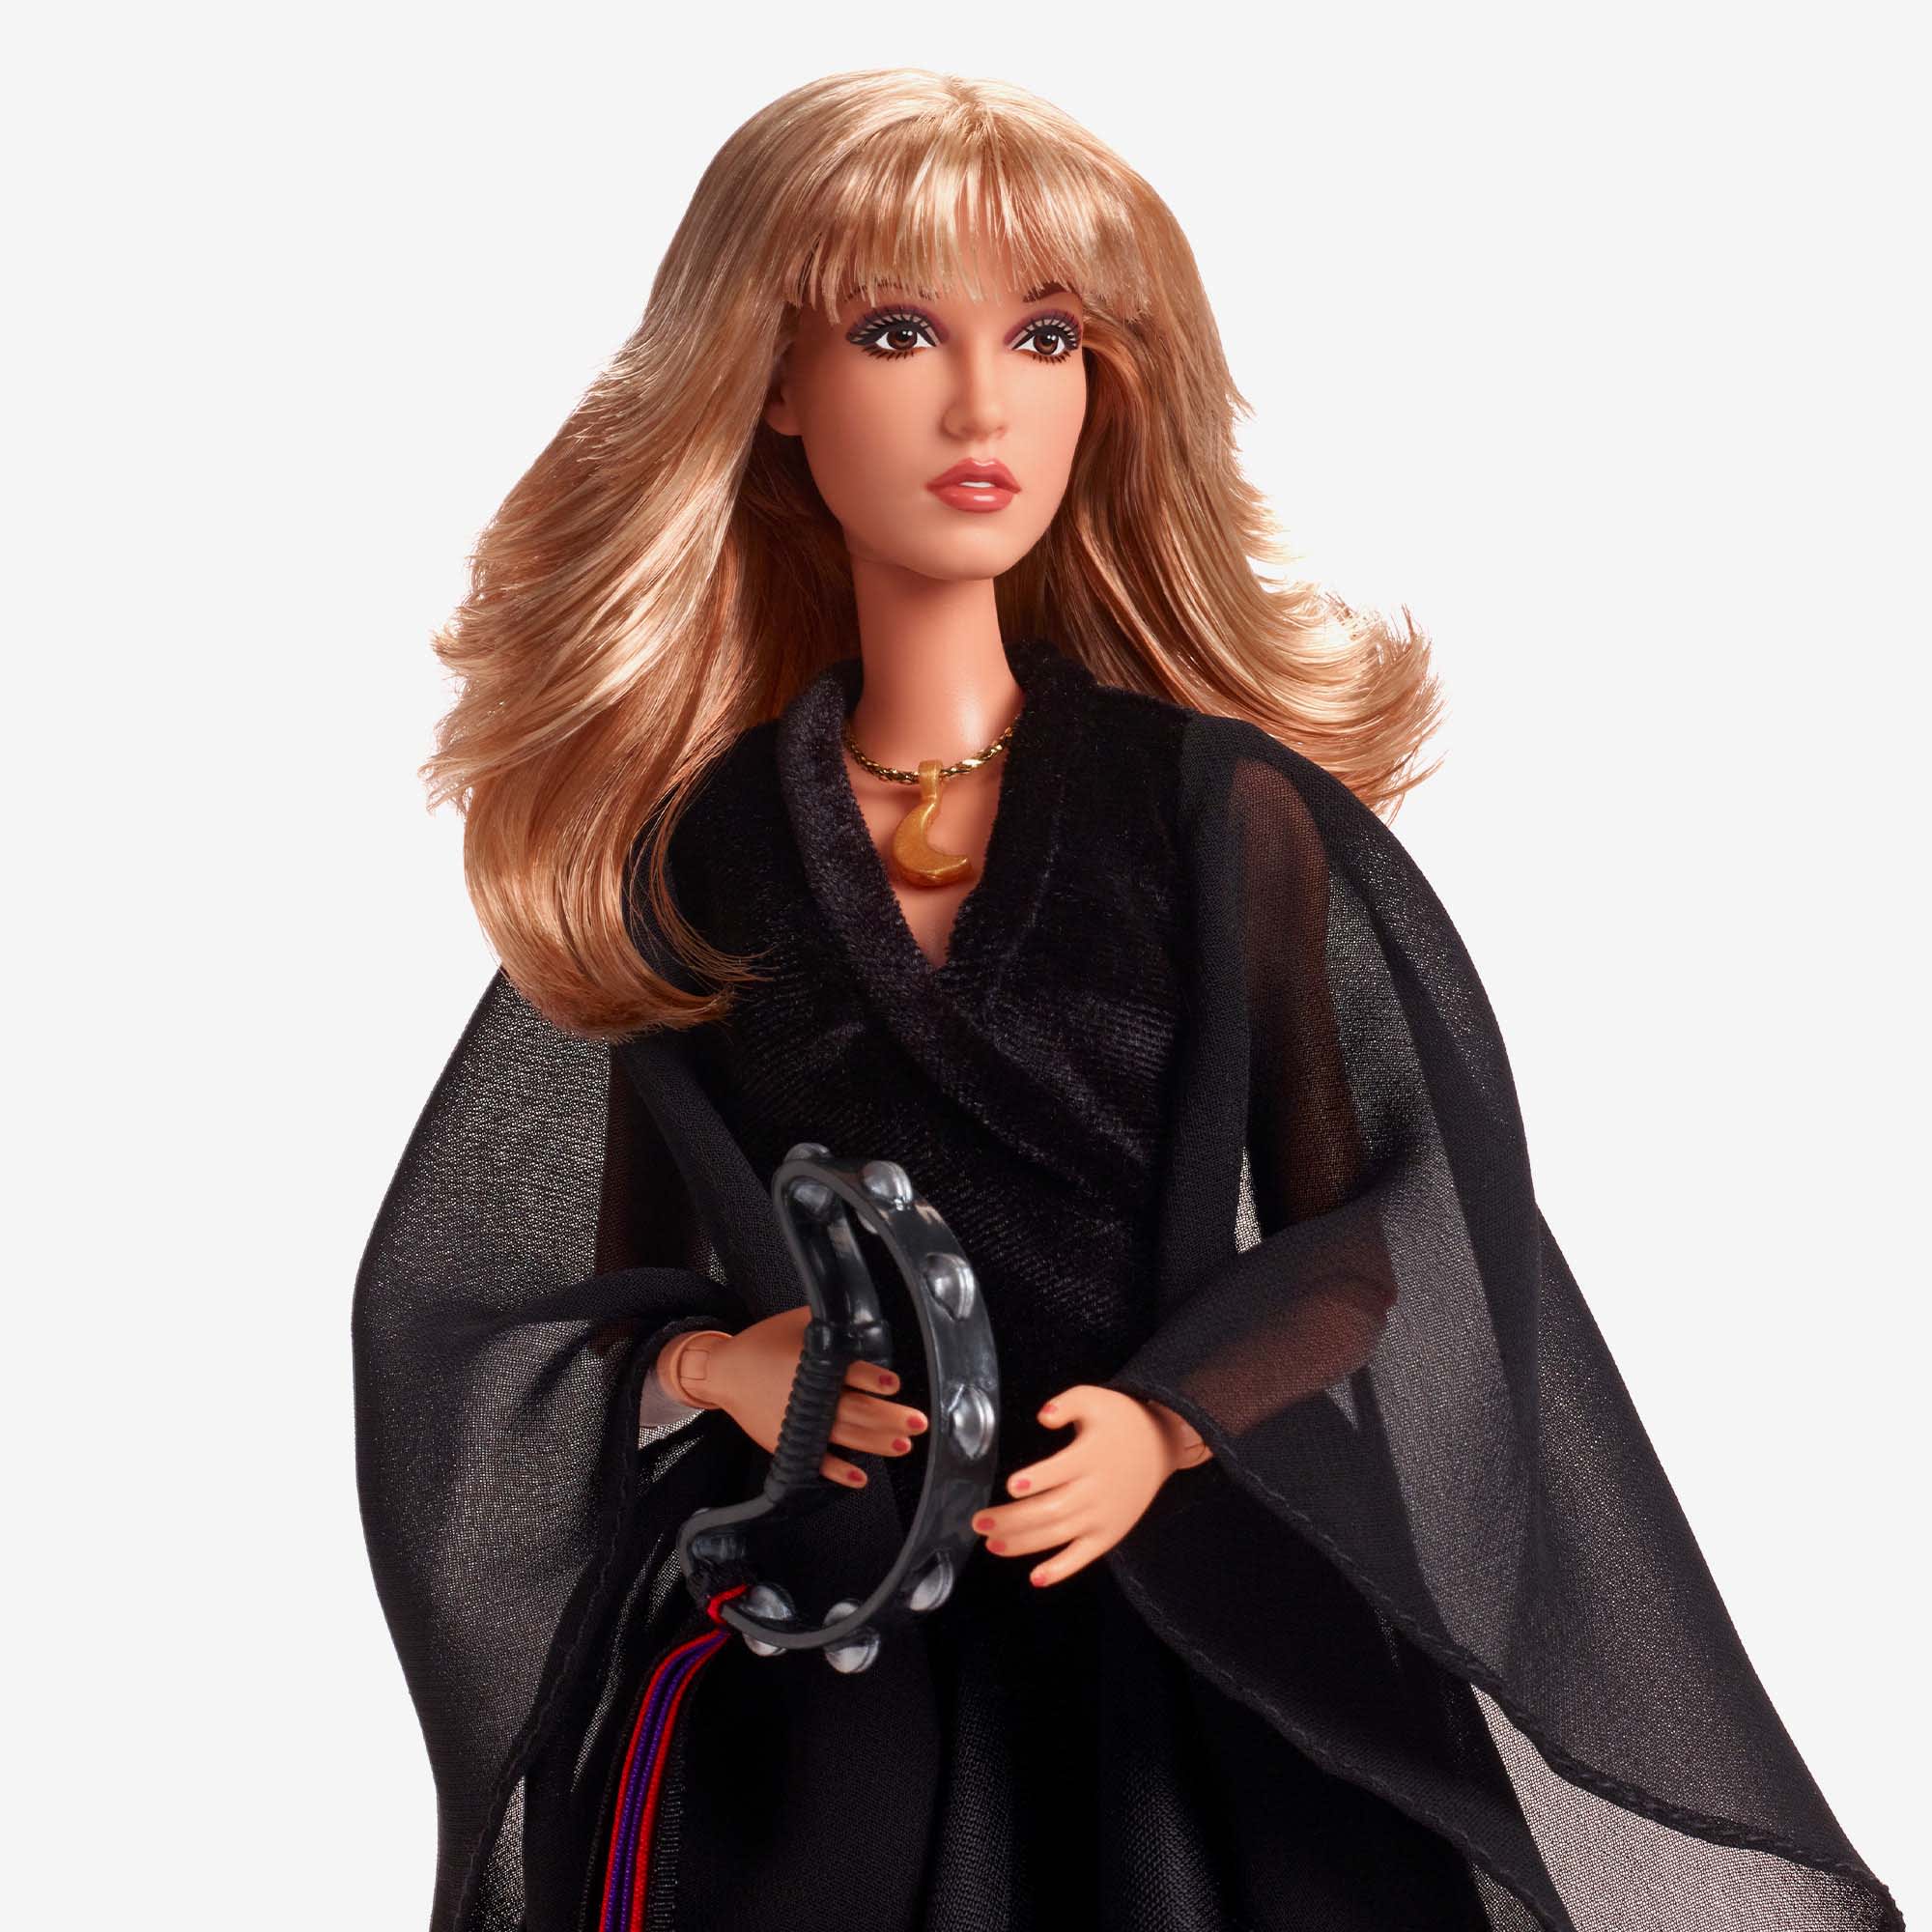 Stevie Nicks' Barbie: Mattel Releases Doll Inspired by the Singer